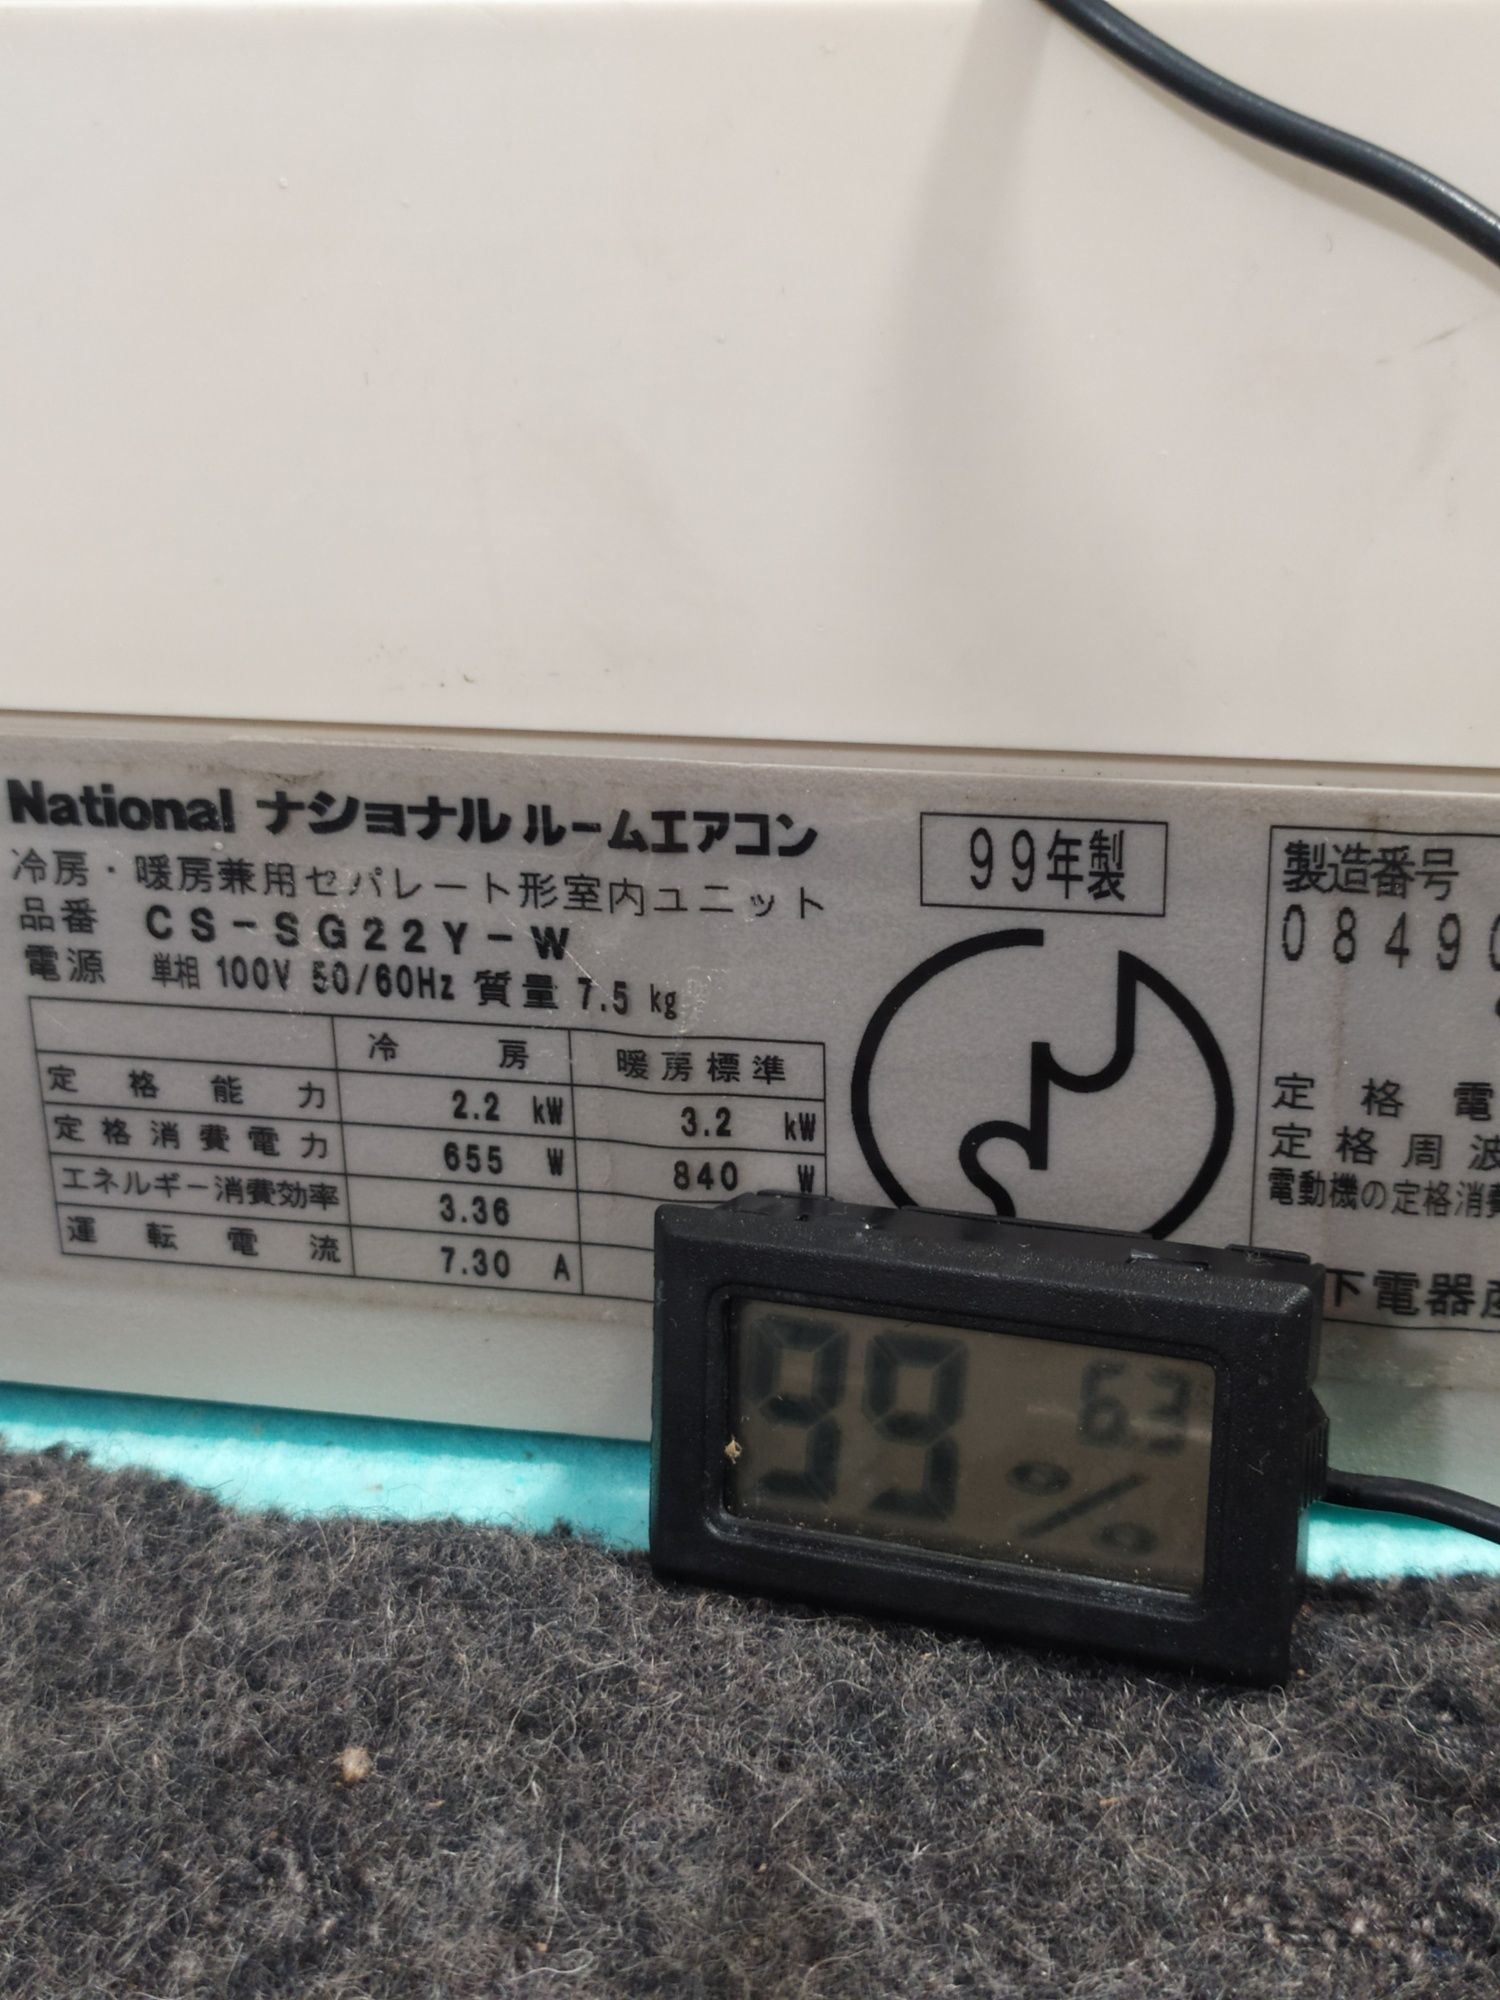 Японски климатик National